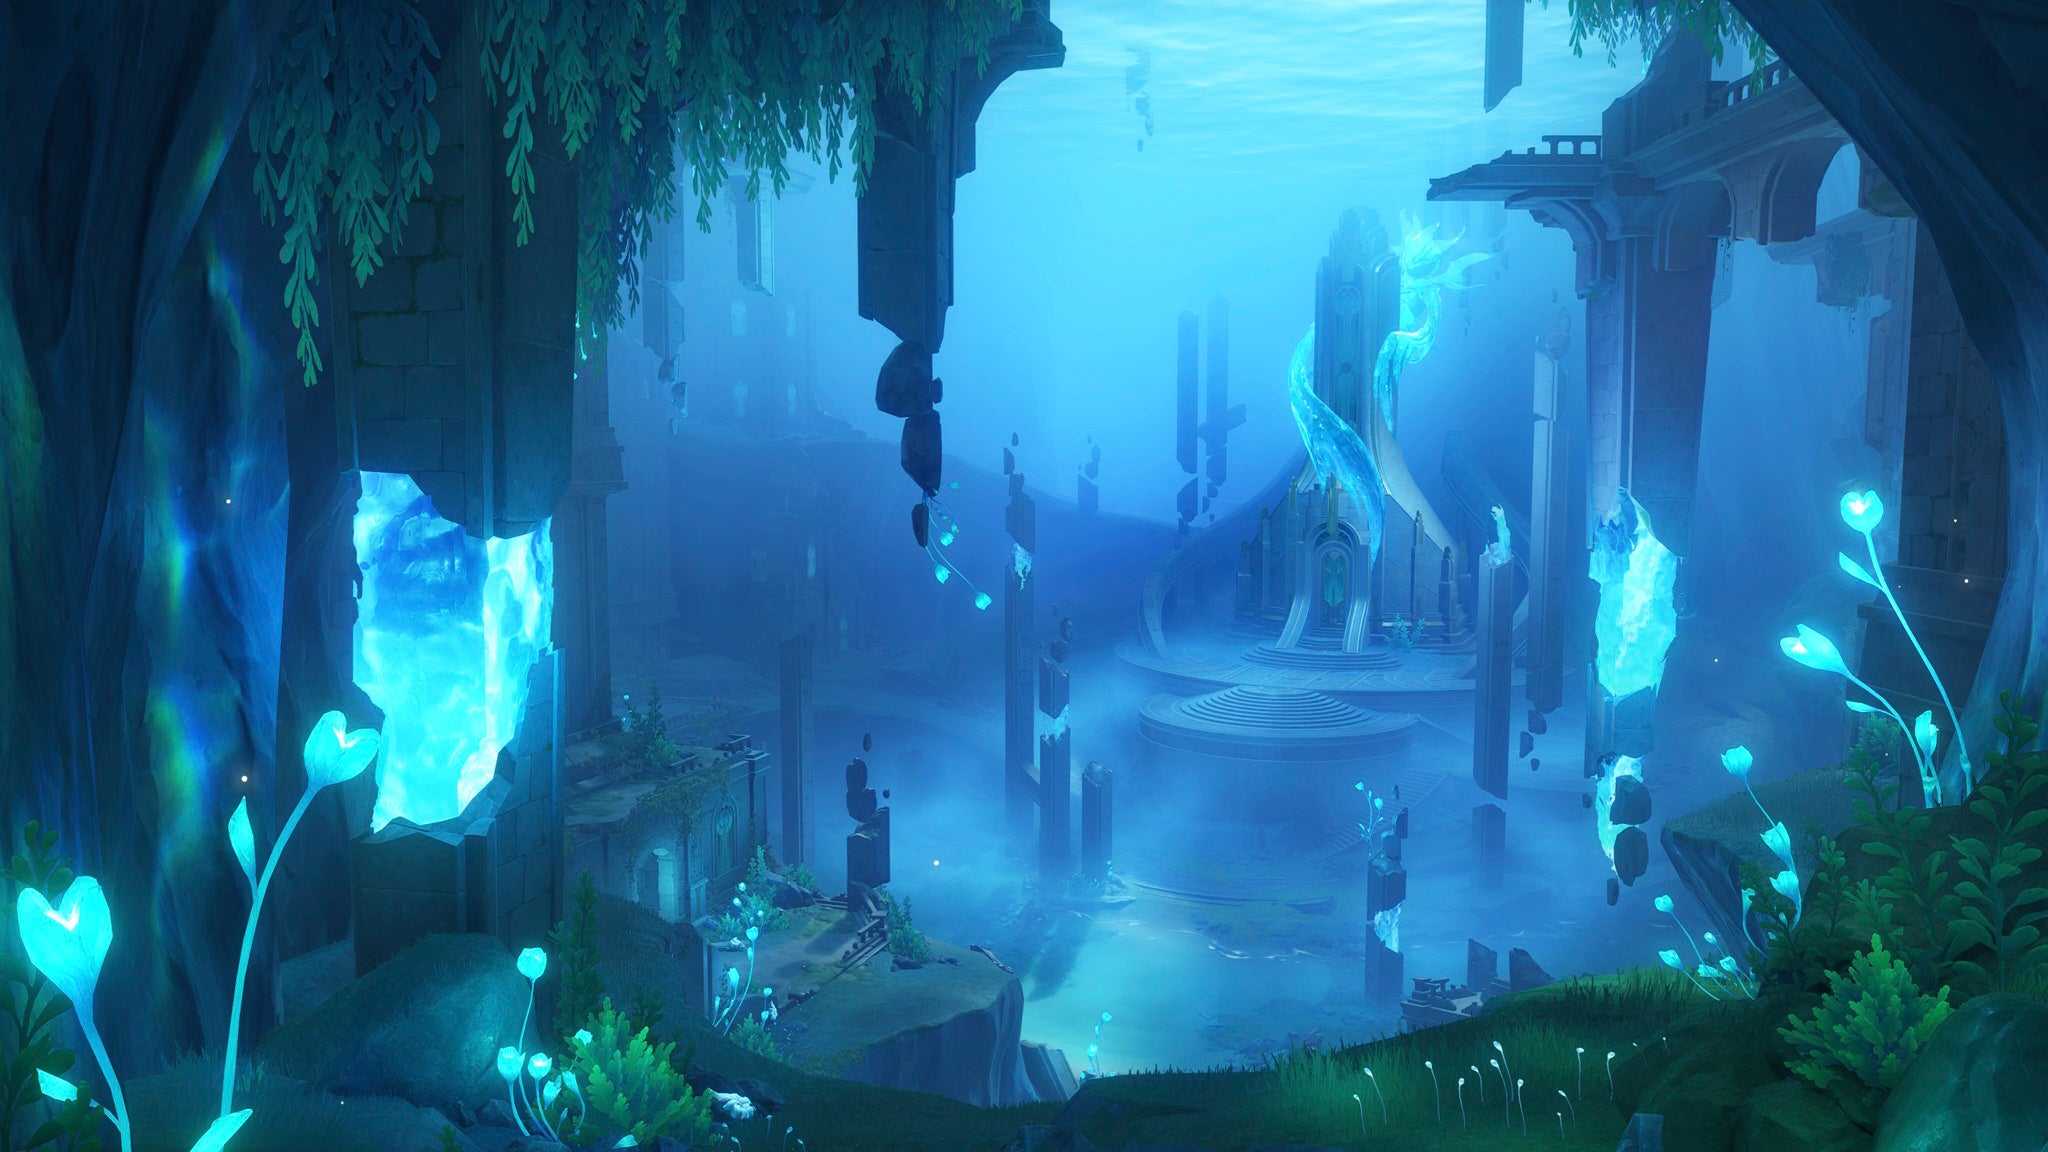 Captura de pantalla de un paisaje submarino con edificios y plantas acuáticas.